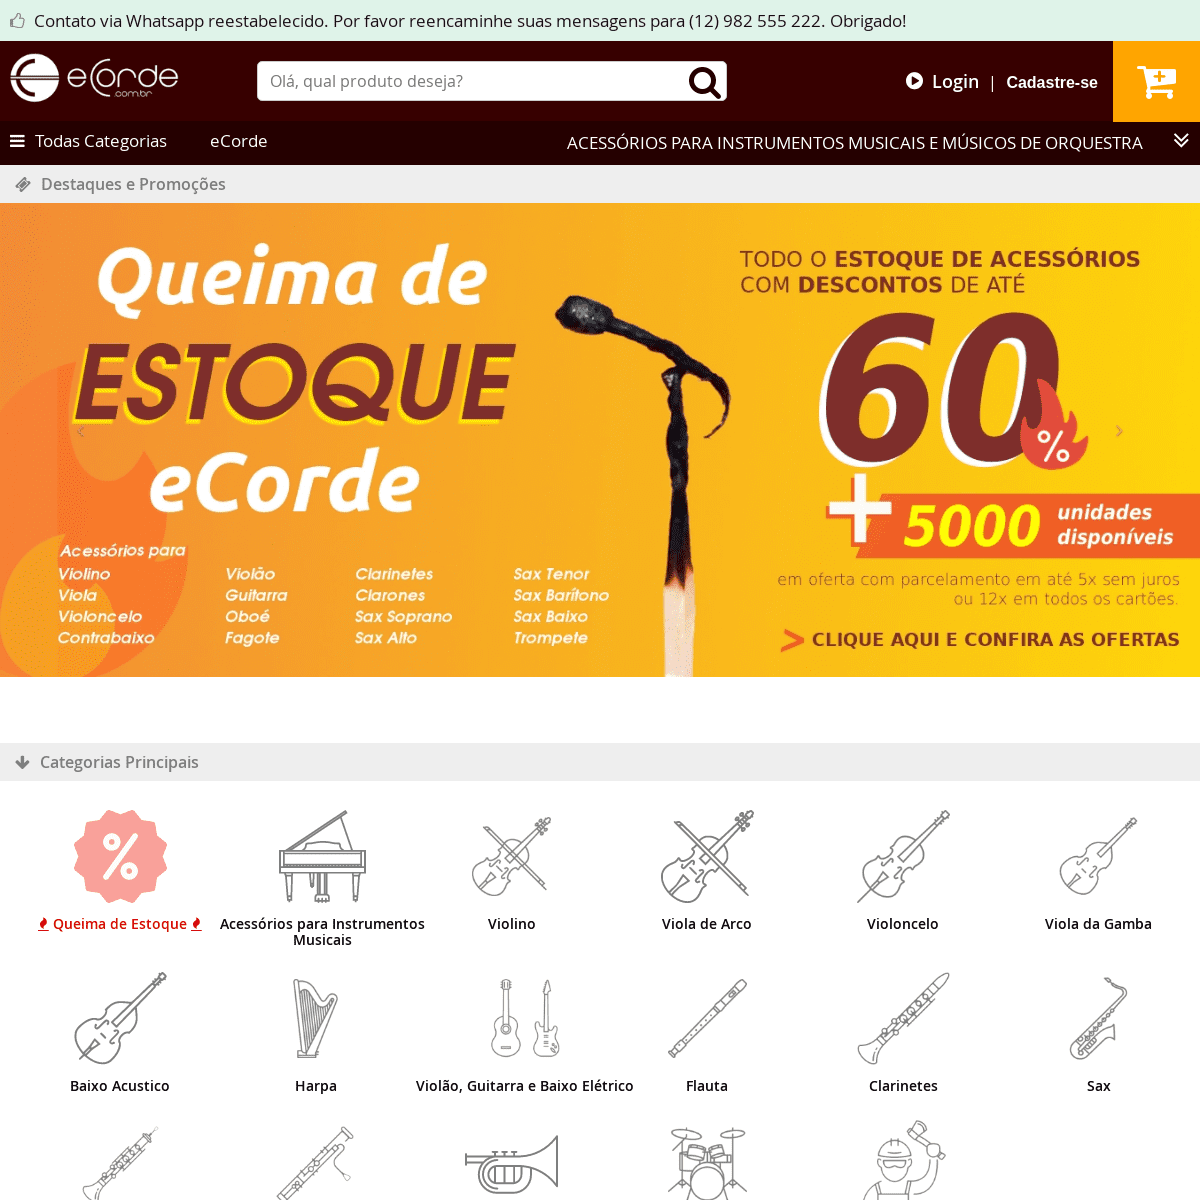 A complete backup of ecorde.com.br